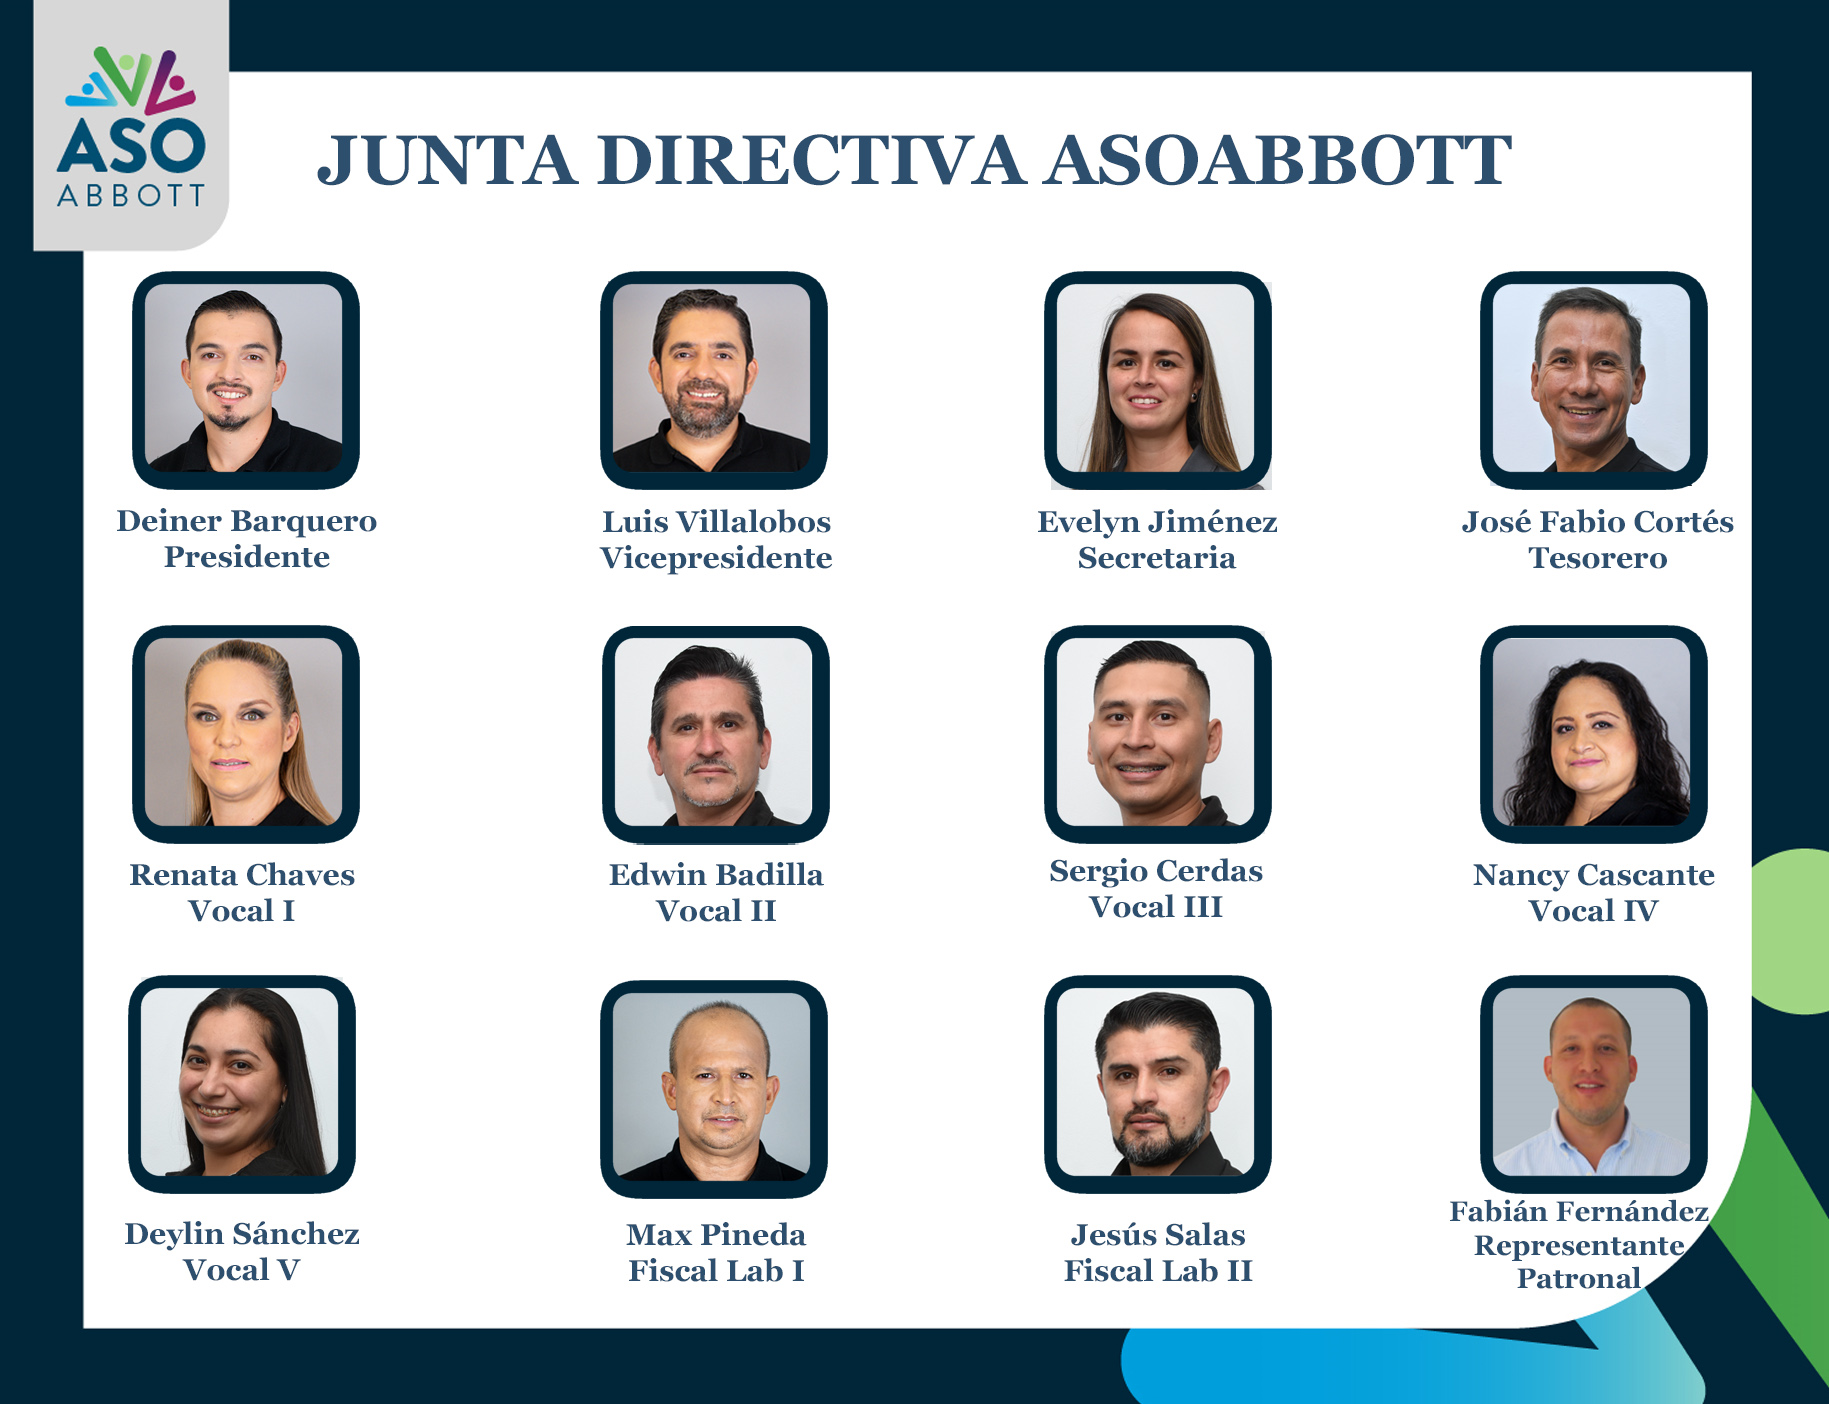 Junta Directiva Asociación Abbott 2022-2023